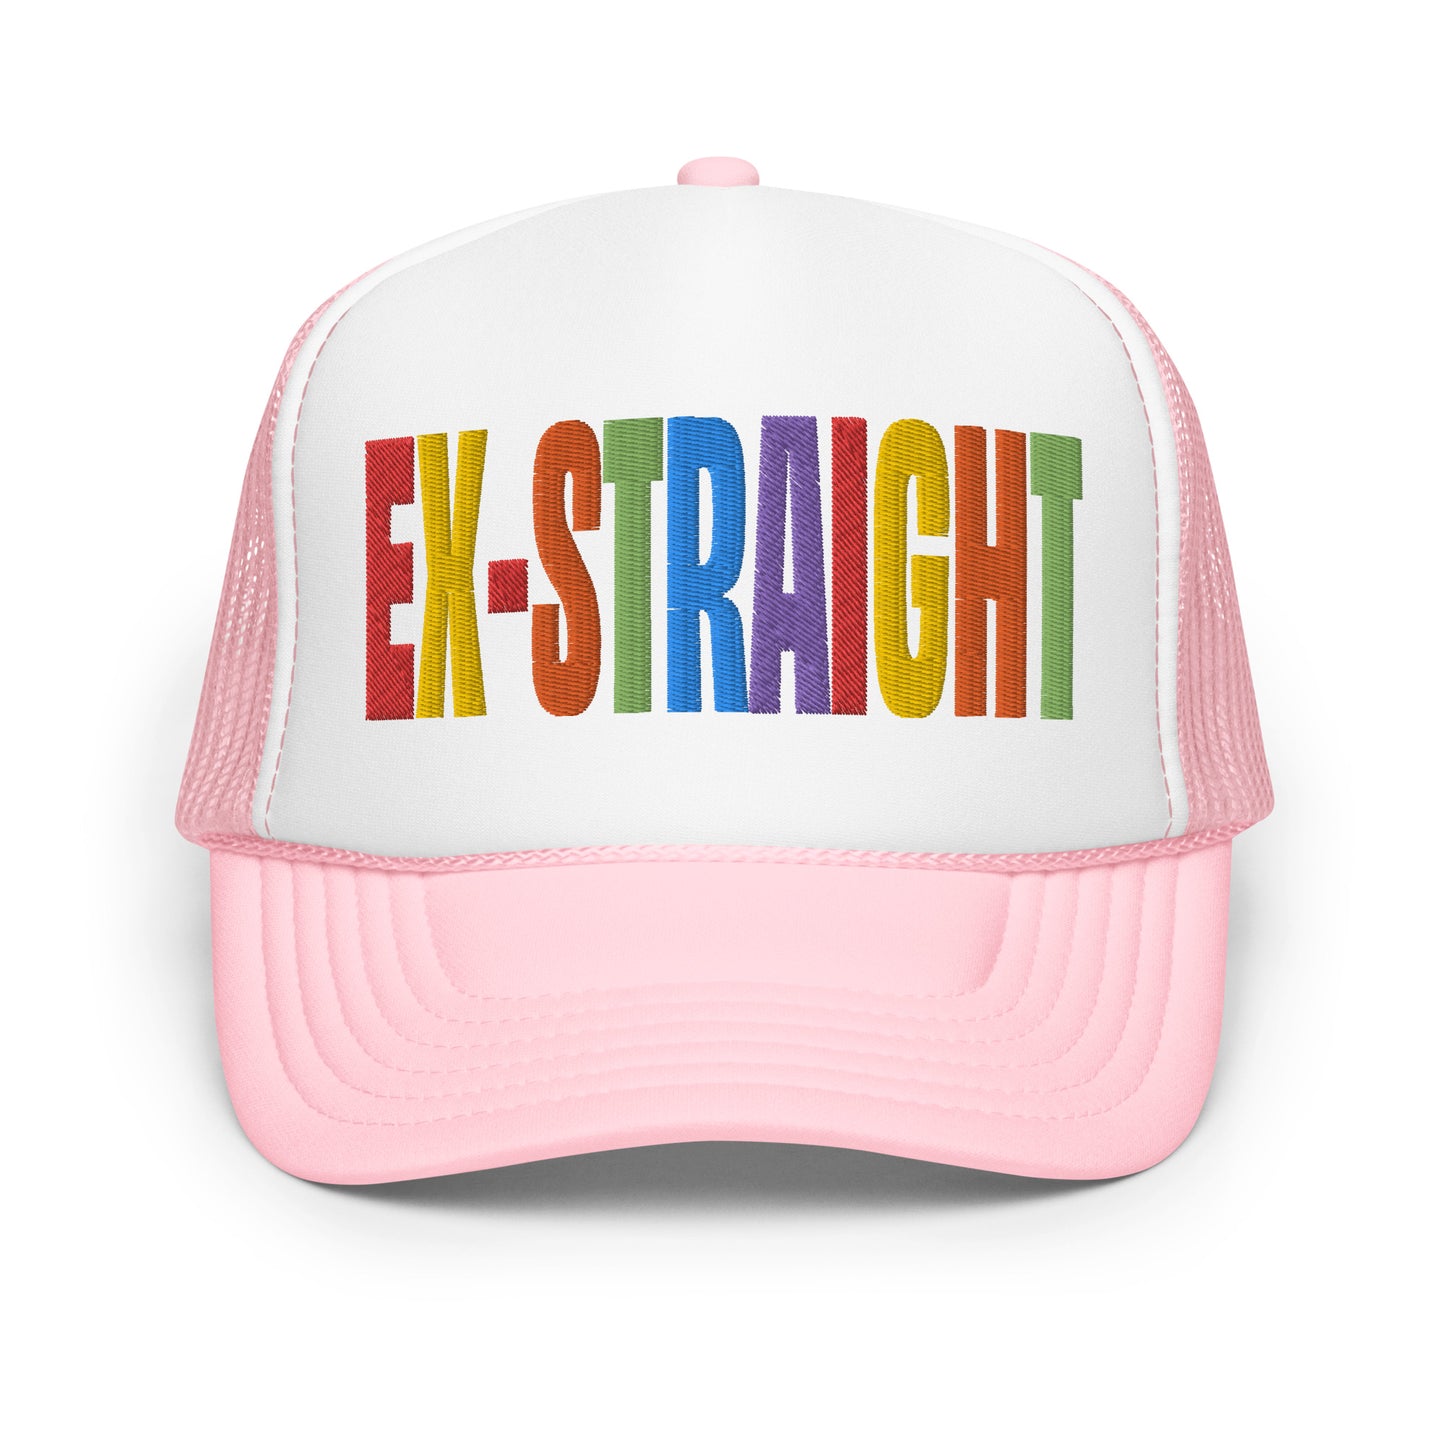 Ex-Straight Trucker Hat